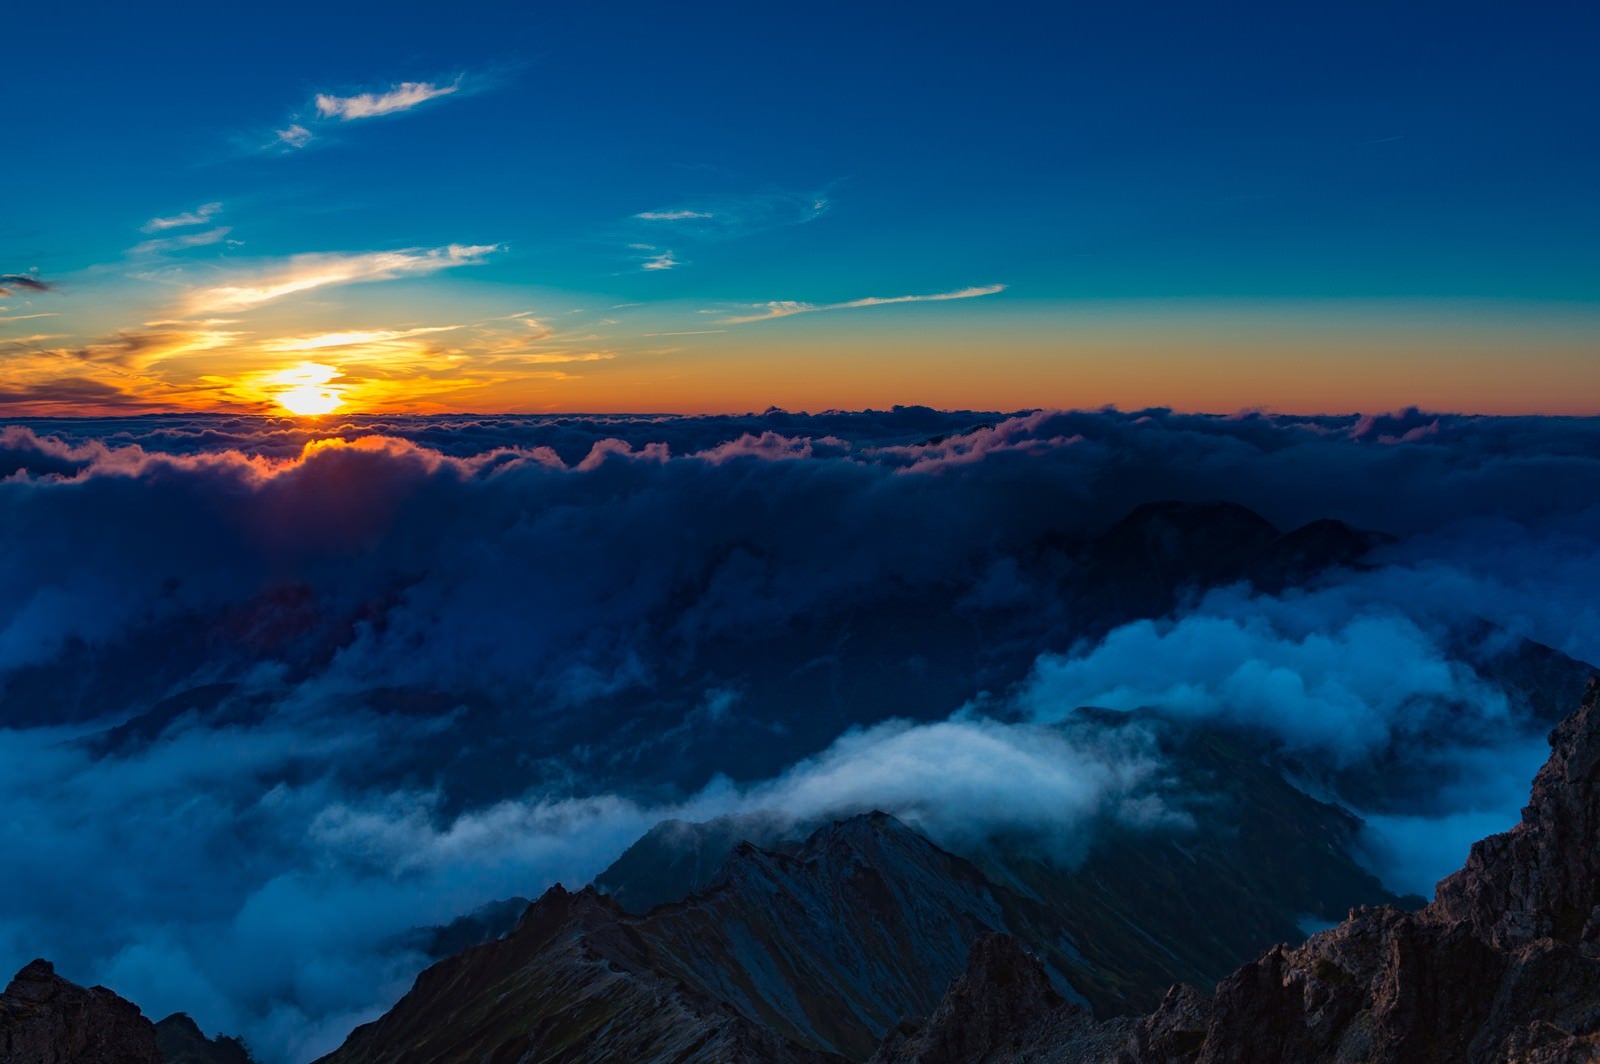 「槍ヶ岳山頂から見下ろす夕暮れの北アルプスの山々」の写真